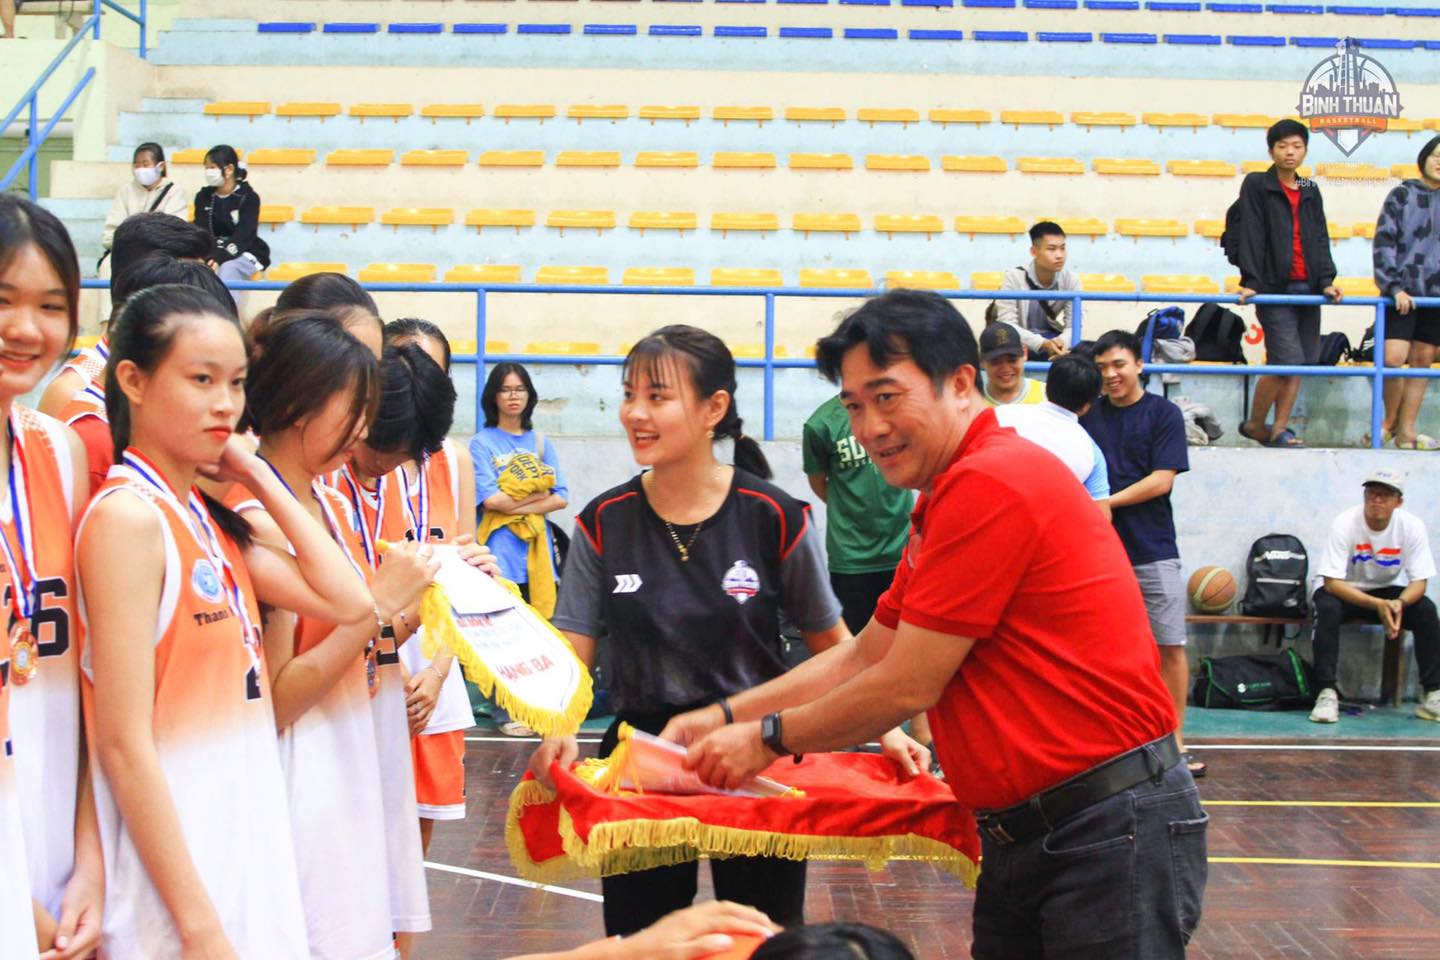 HLV CLB bóng rổ Bình Thuận bất ngờ từ trần tại giải bóng rổ VĐQG 2021 - Ảnh 1